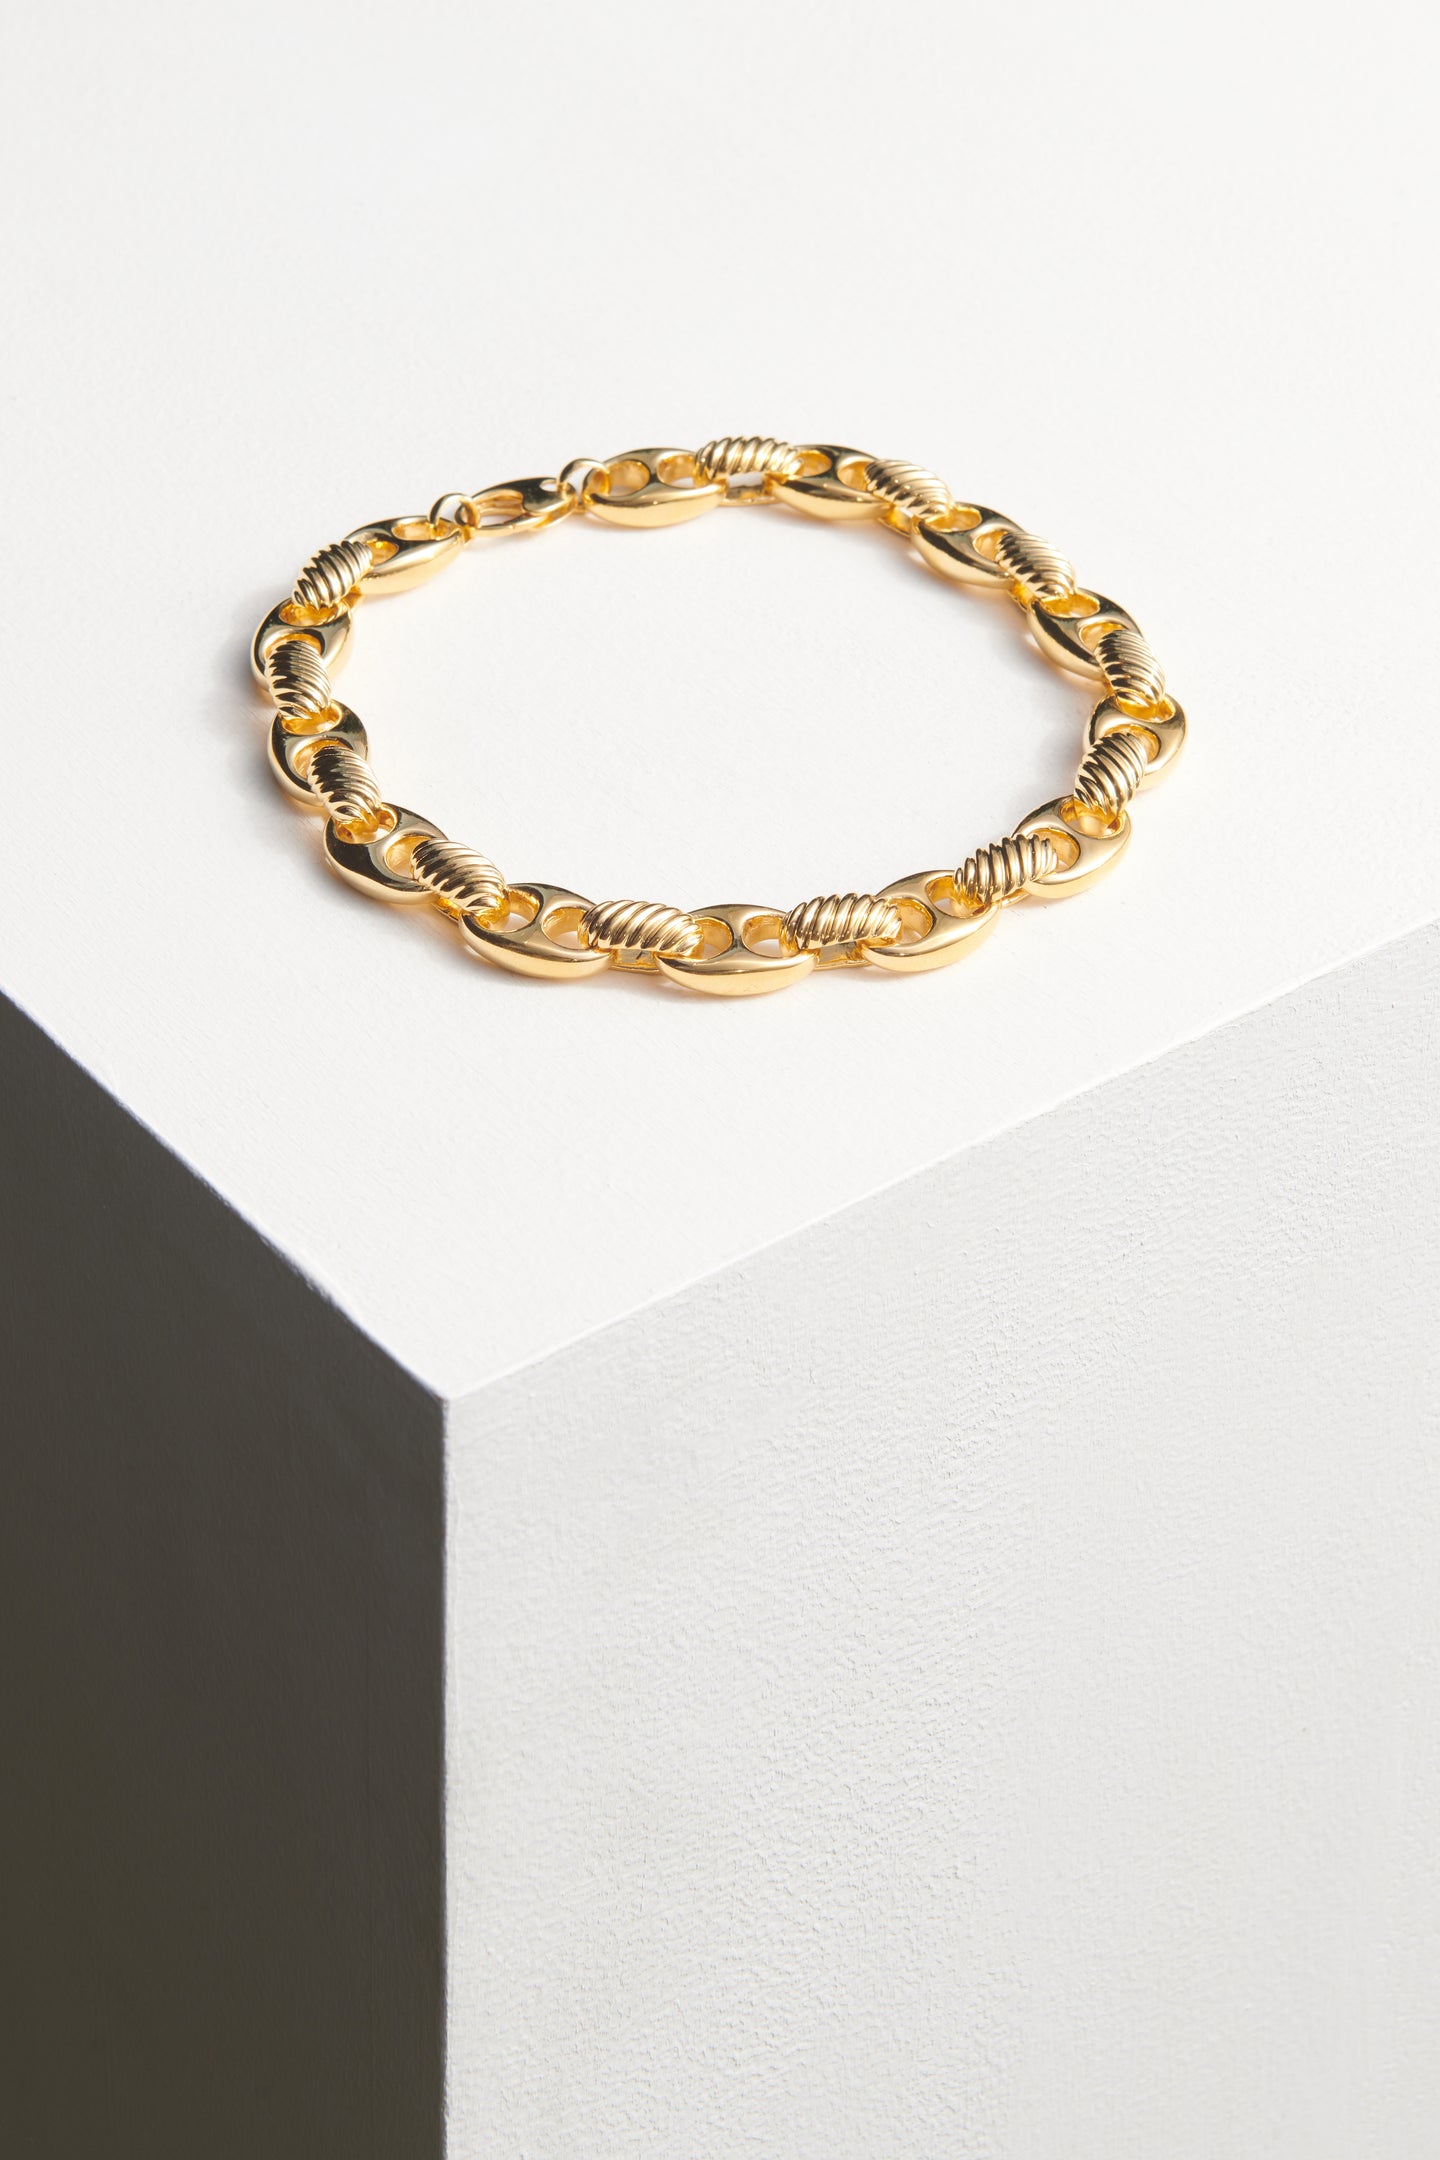 Blondeau Chain Necklace | Sophie Buhai